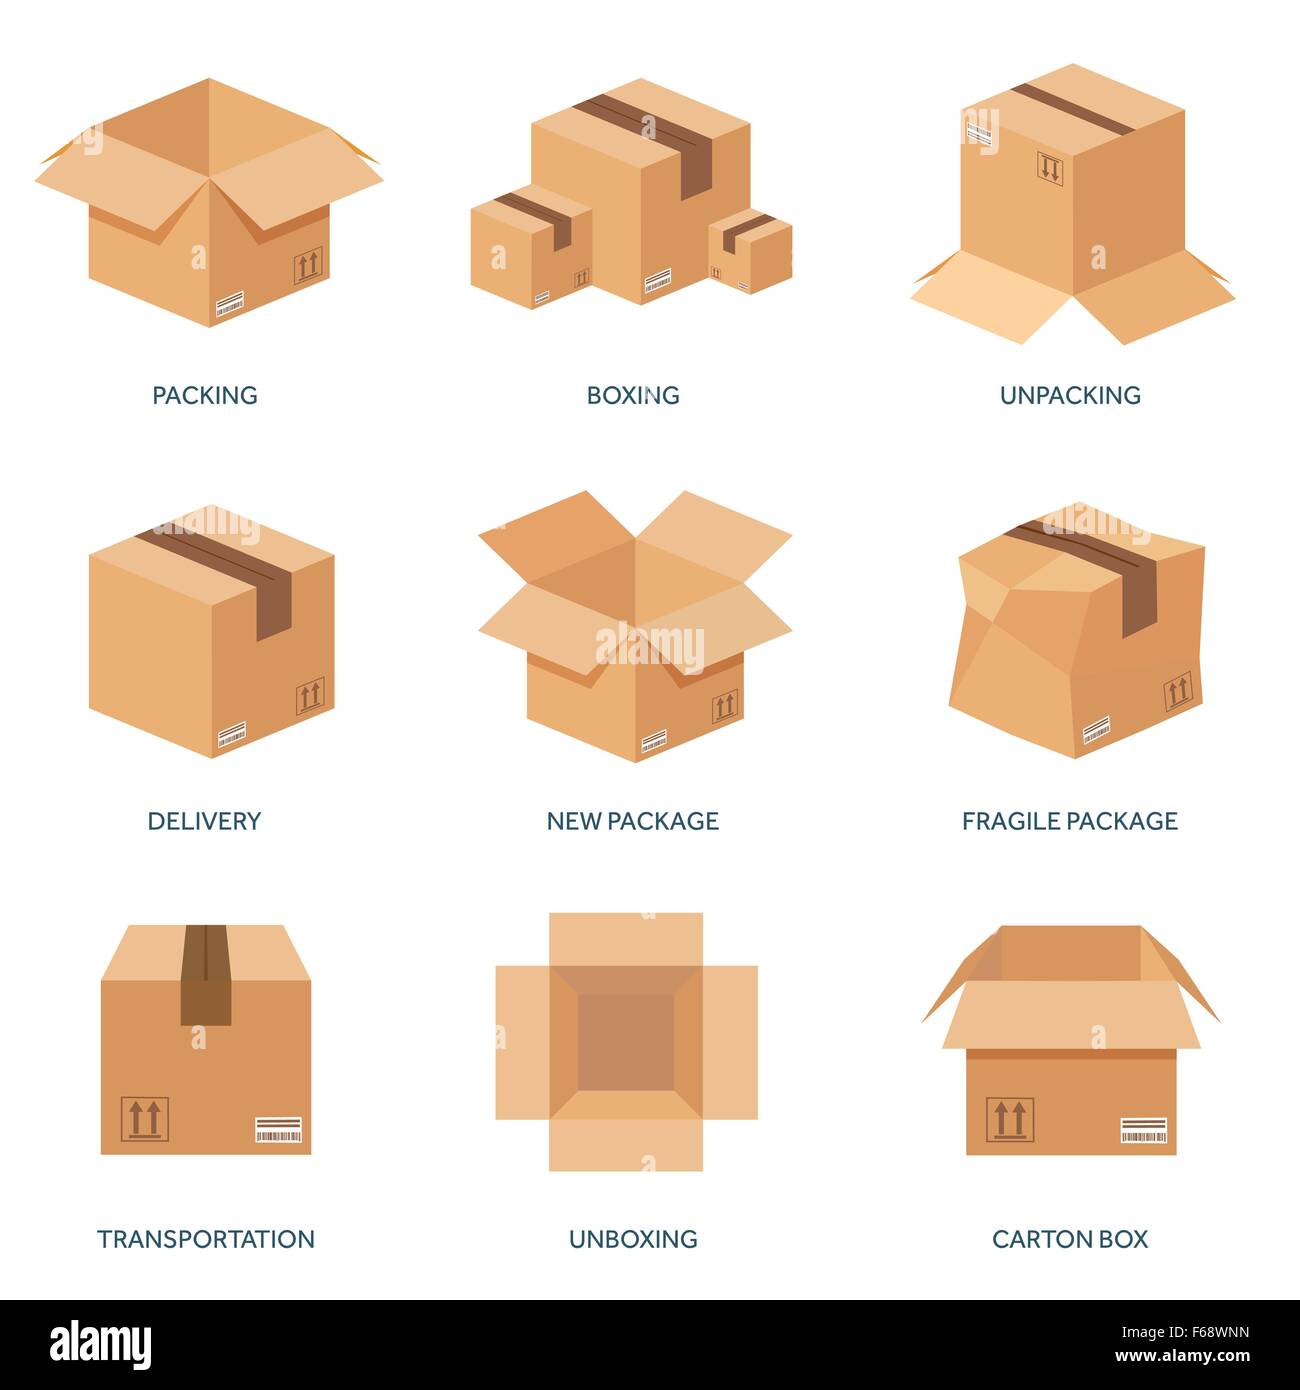 Vector illustration. Flat carton box. Transport, packaging